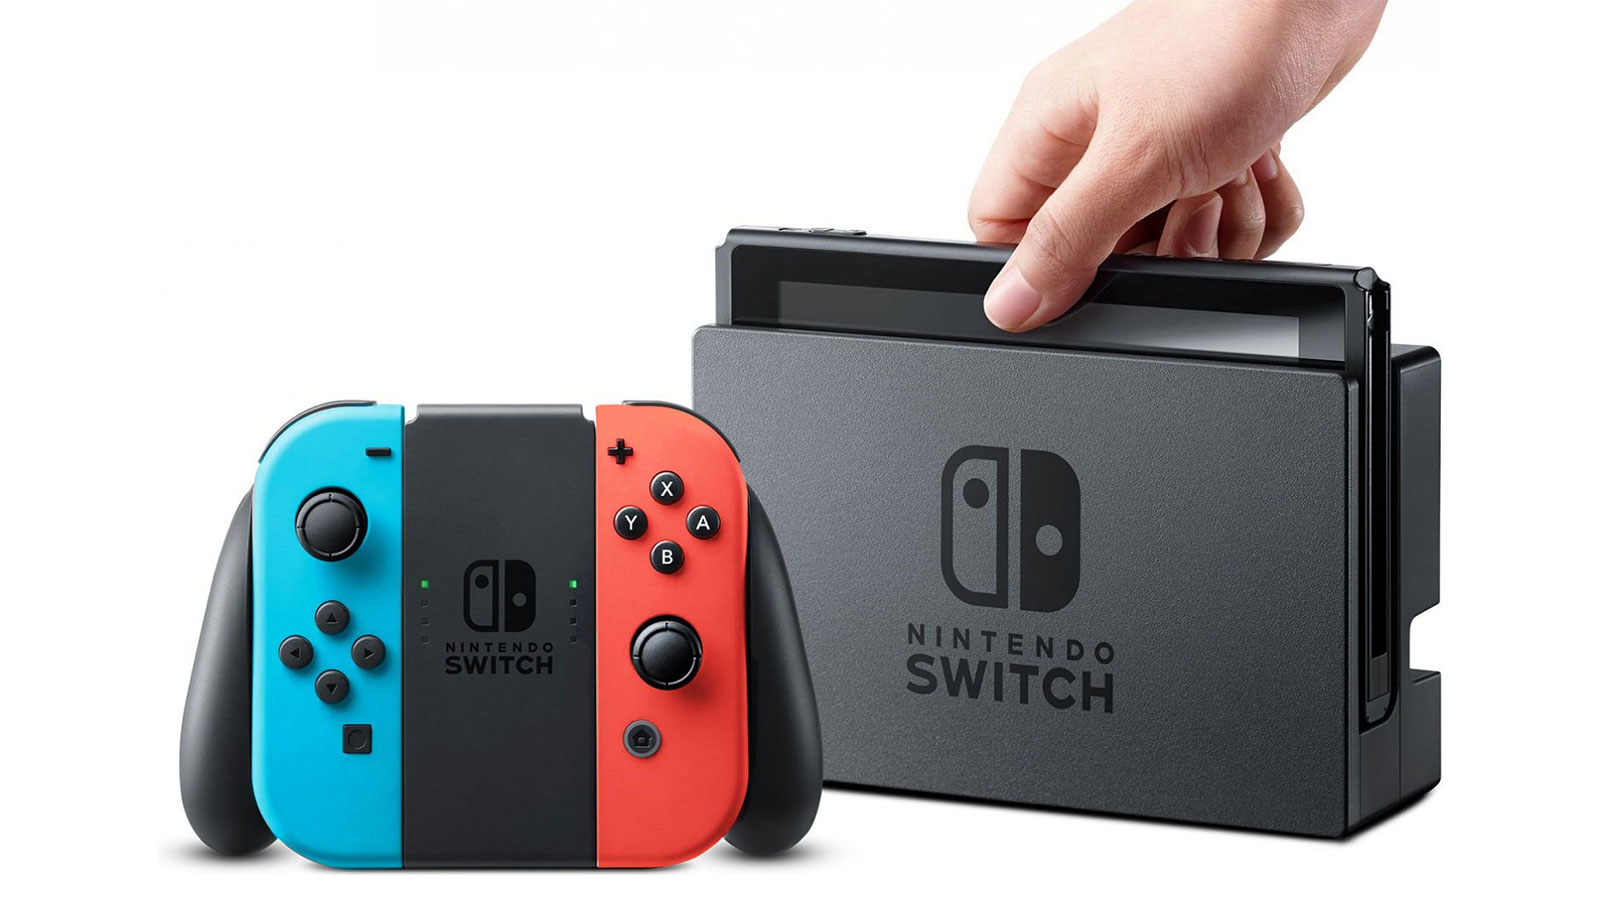 Nintendo-k 55,77 milioi kontsola saldu ditu dagoeneko Switch